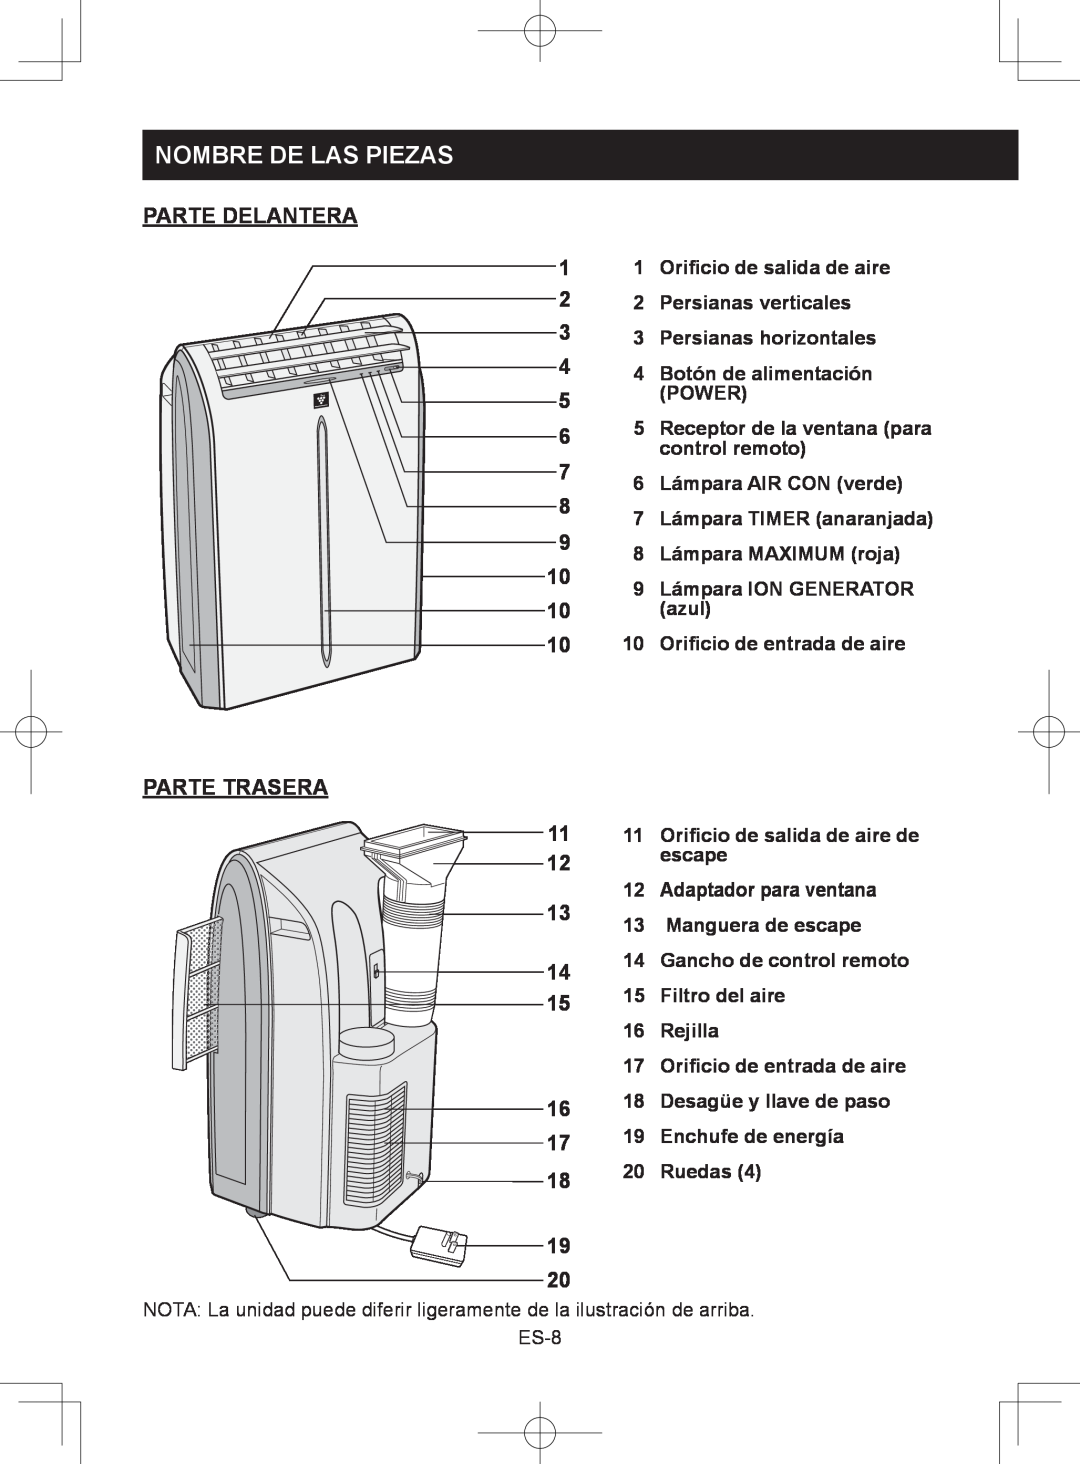 Sharp CV-2P10SC operation manual Nombre De Las Piezas, PARTE DELANTERA 1 2 3 4 5 6, Parte Trasera 